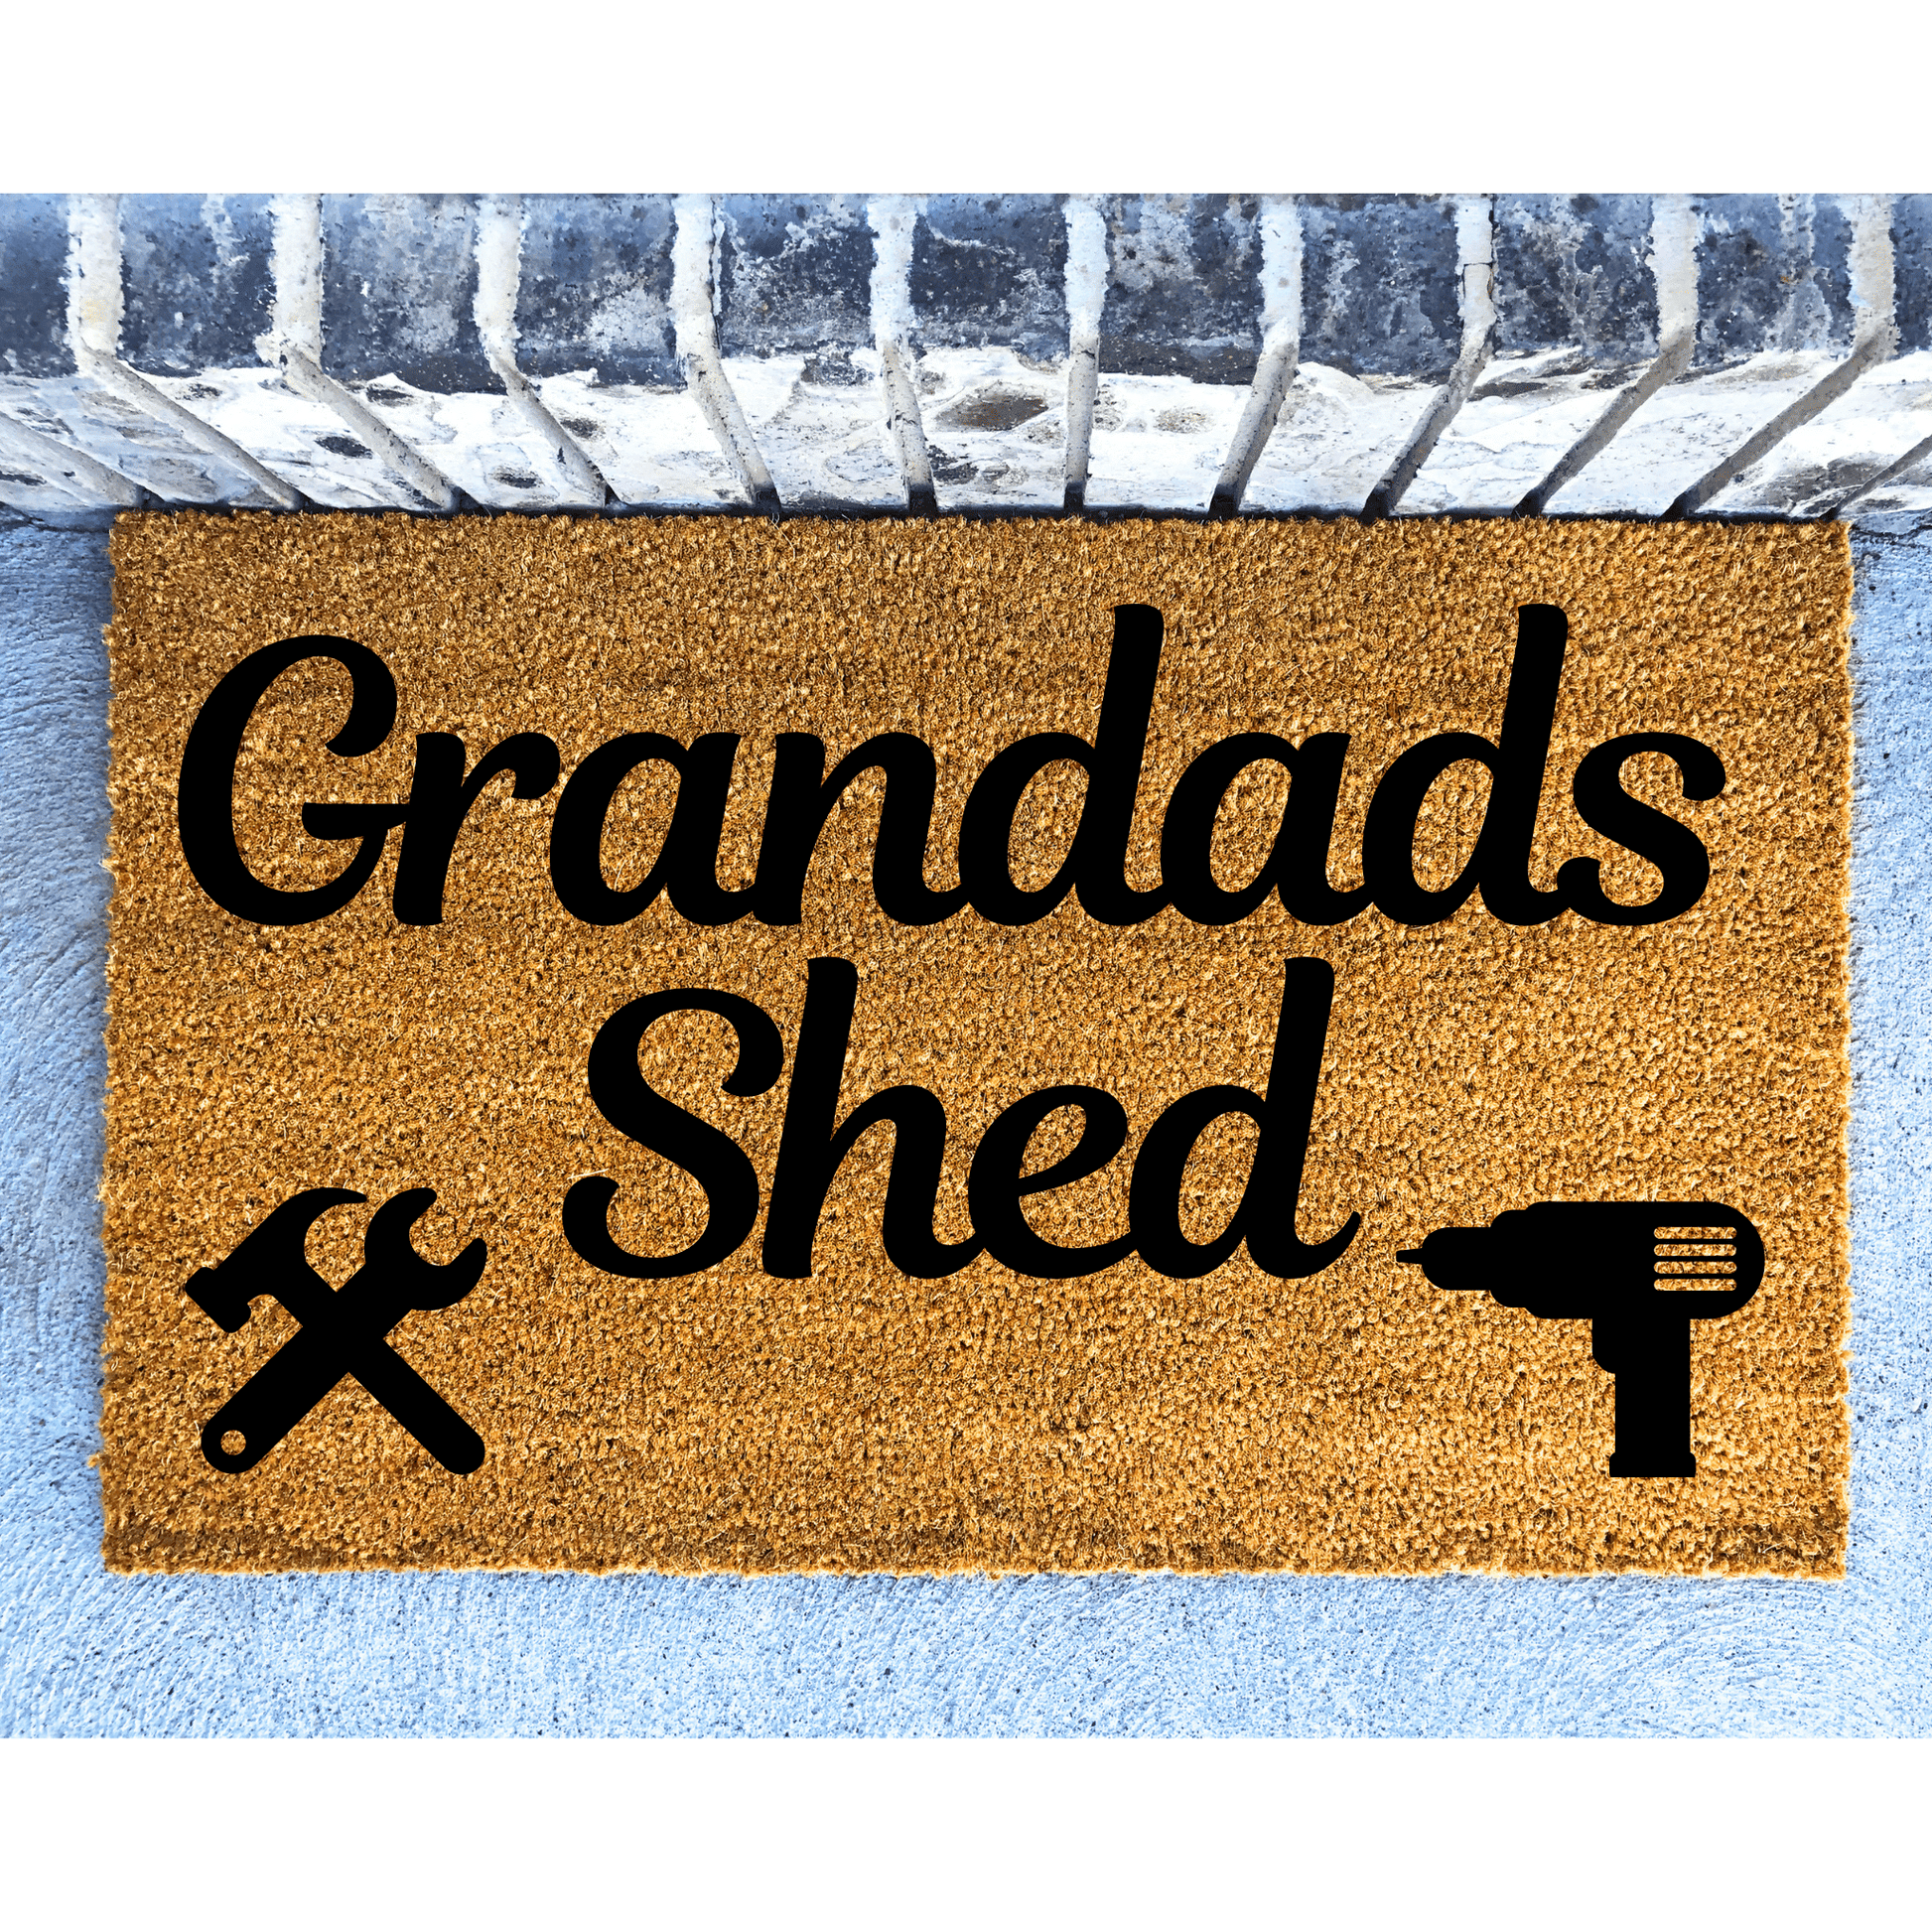 The Shed personalised doormat - Personalised Doormat Australia